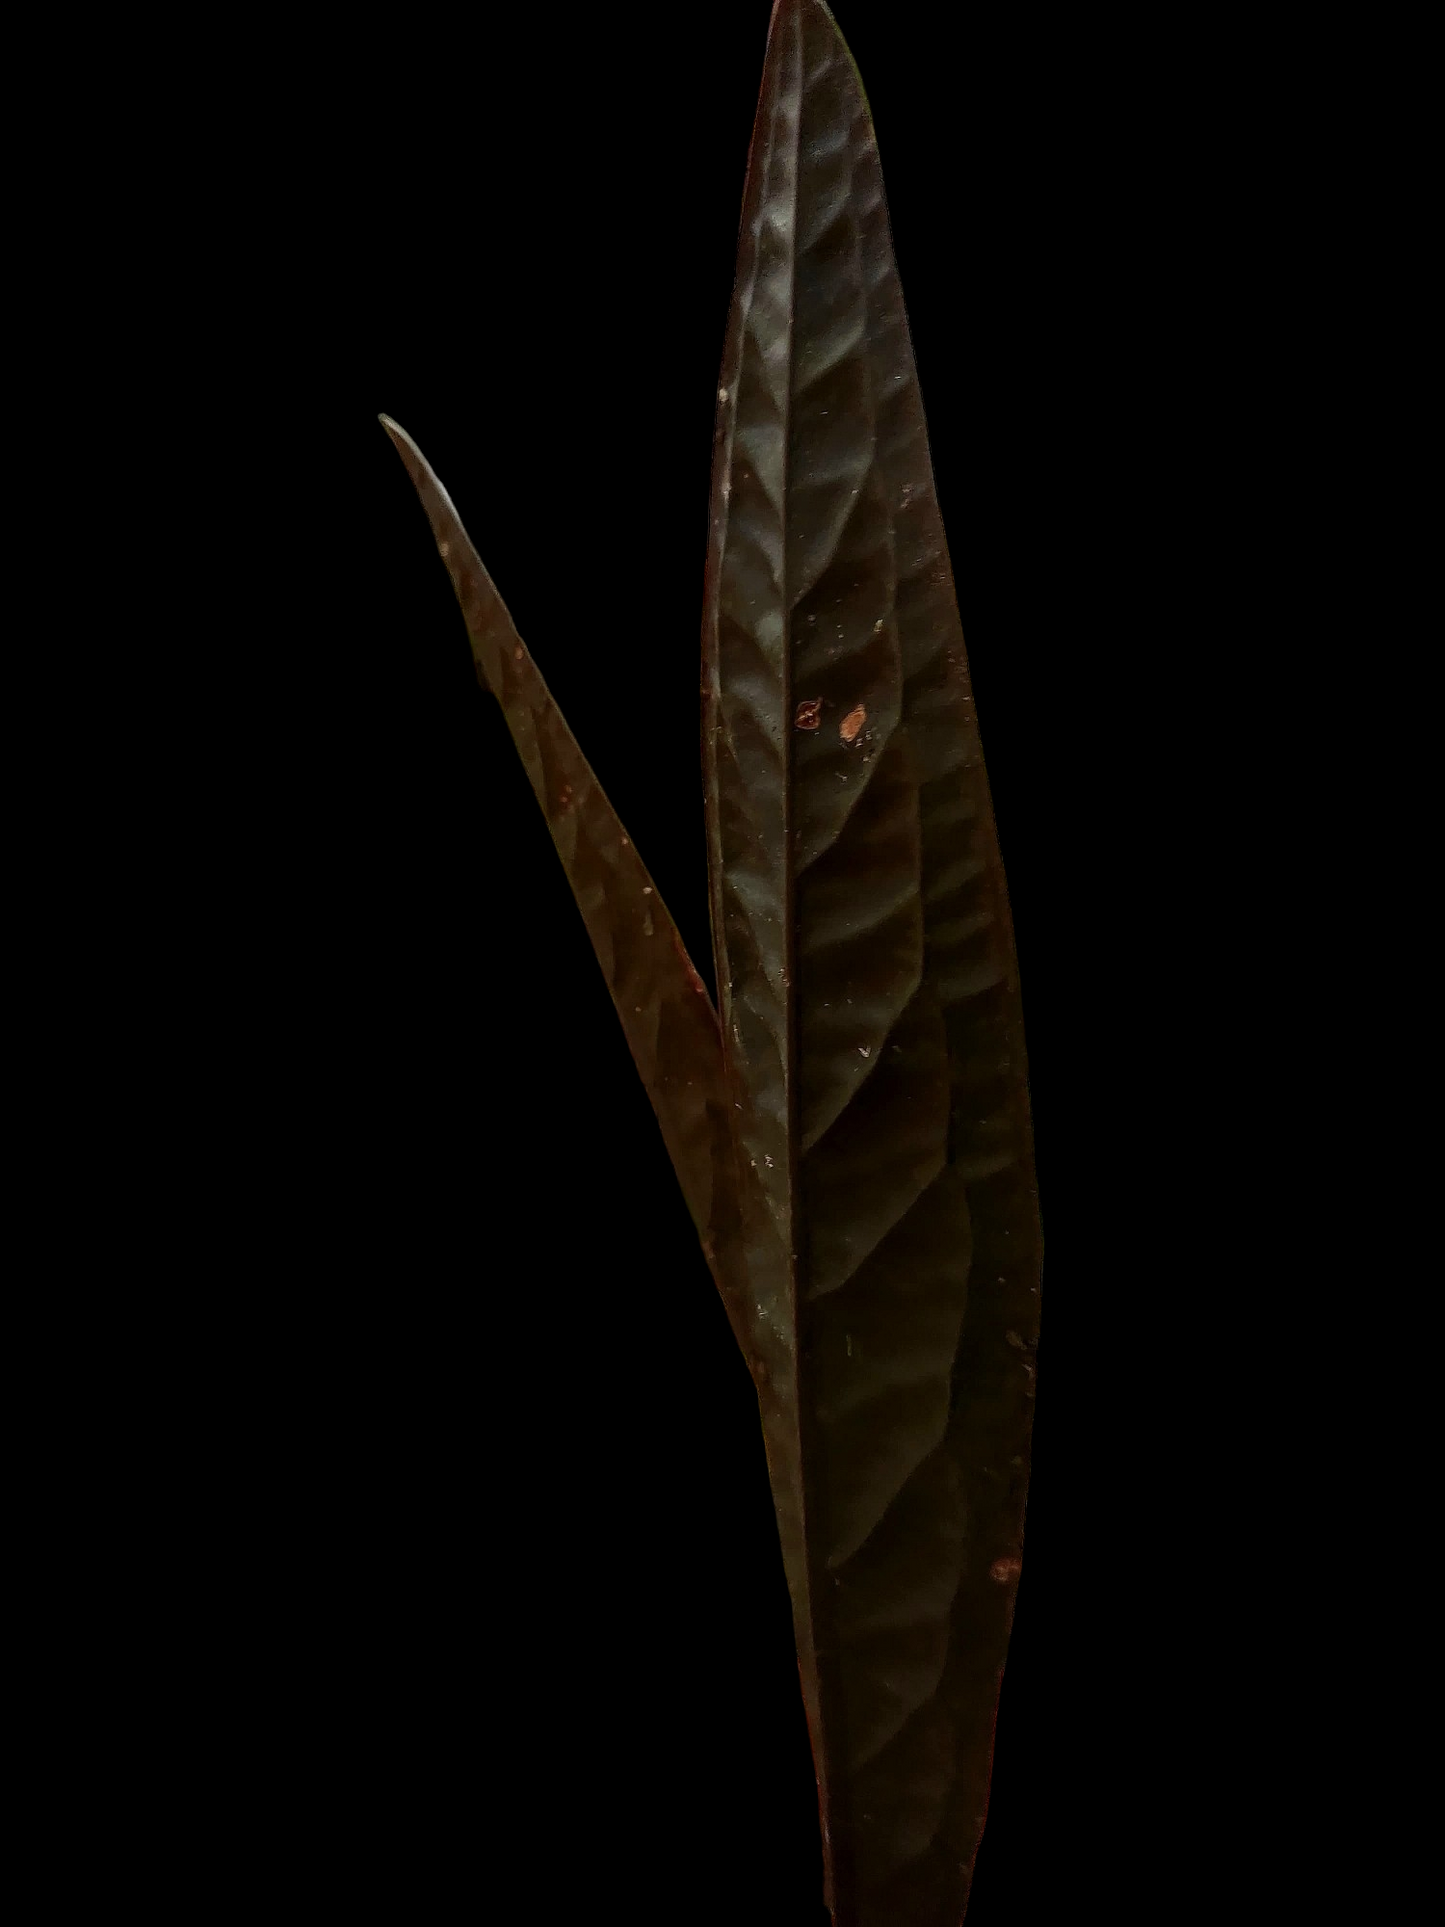 Ultra Rare Anthurium Willifordi (EXACT PLANT)